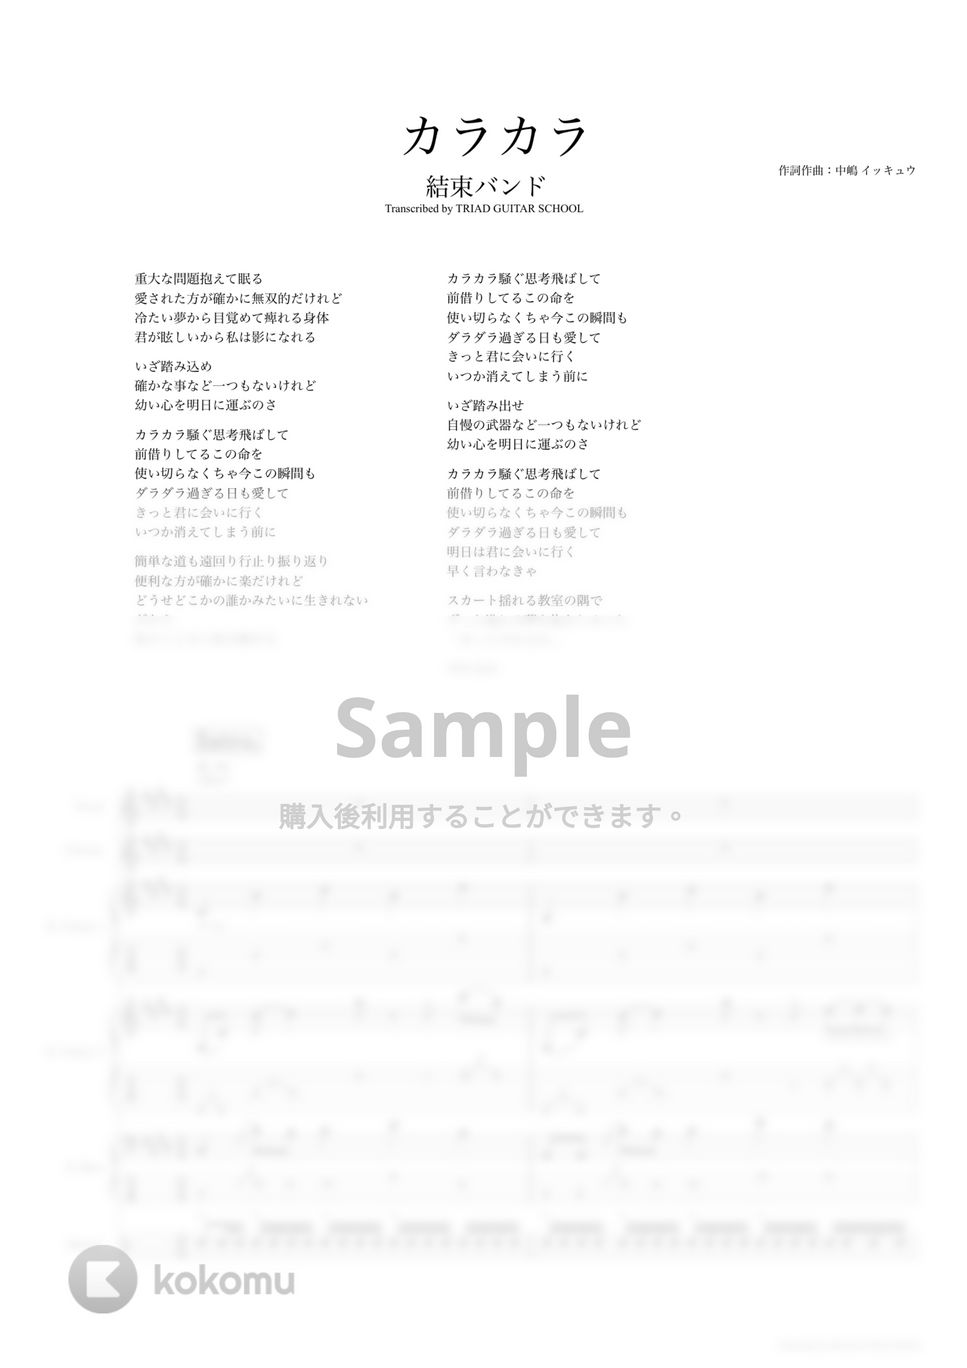 結束バンド - カラカラ (バンドスコア) by TRIAD GUITAR SCHOOL